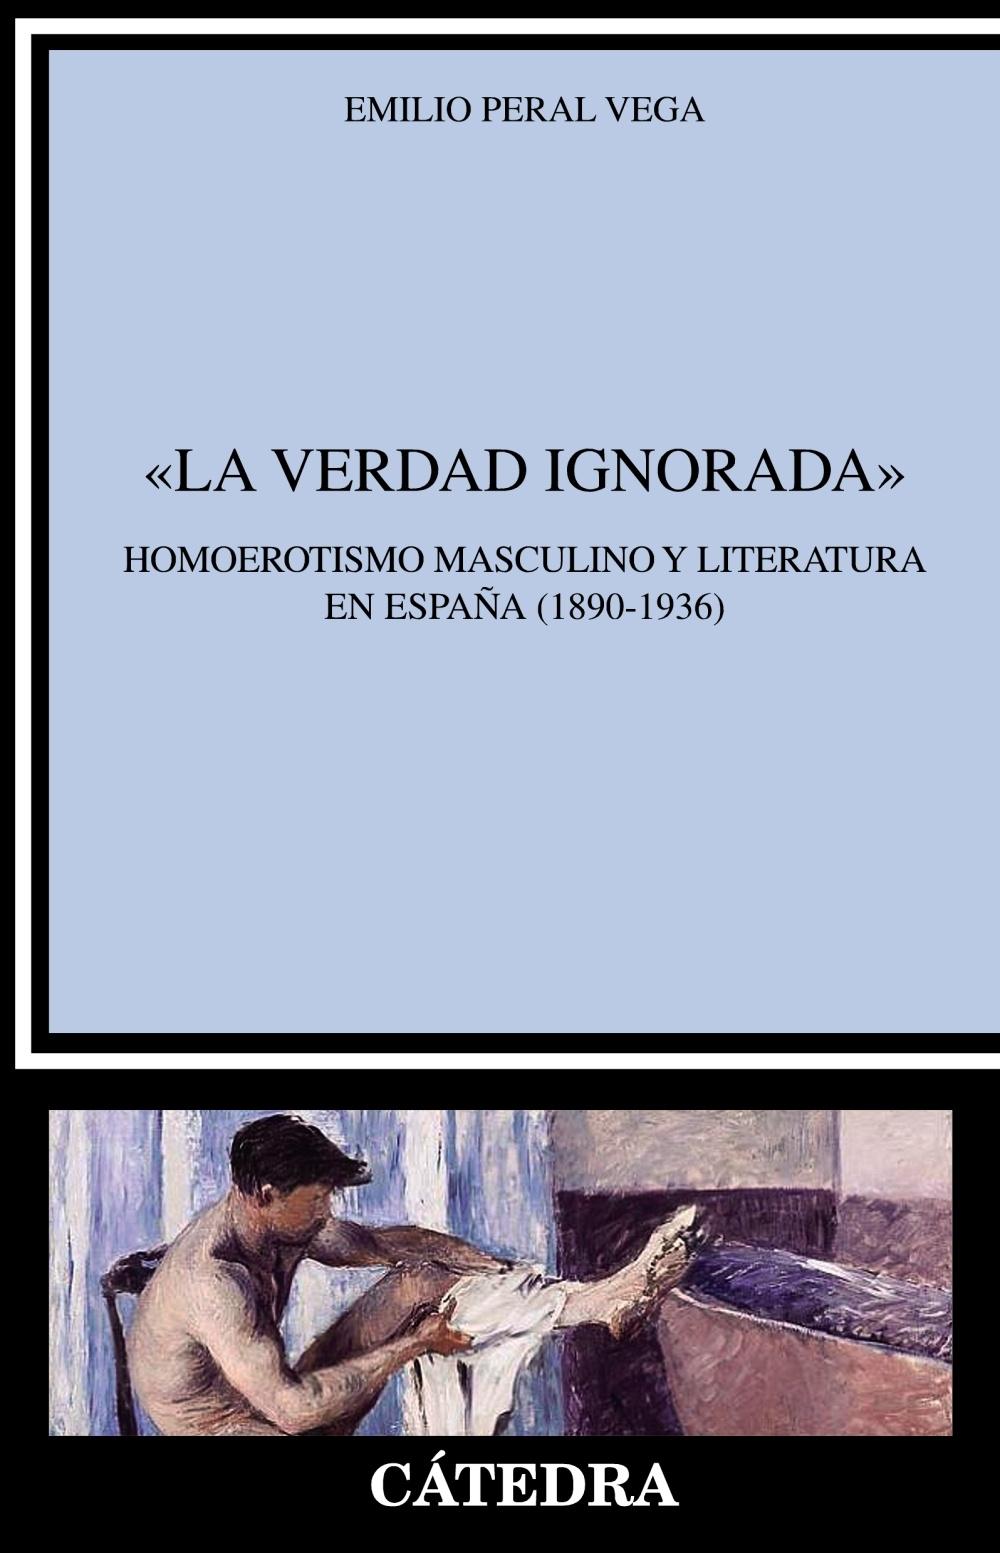 "La verdad ignorada". Homoerotismo masculino y literatura en España "(1890-1936)". 